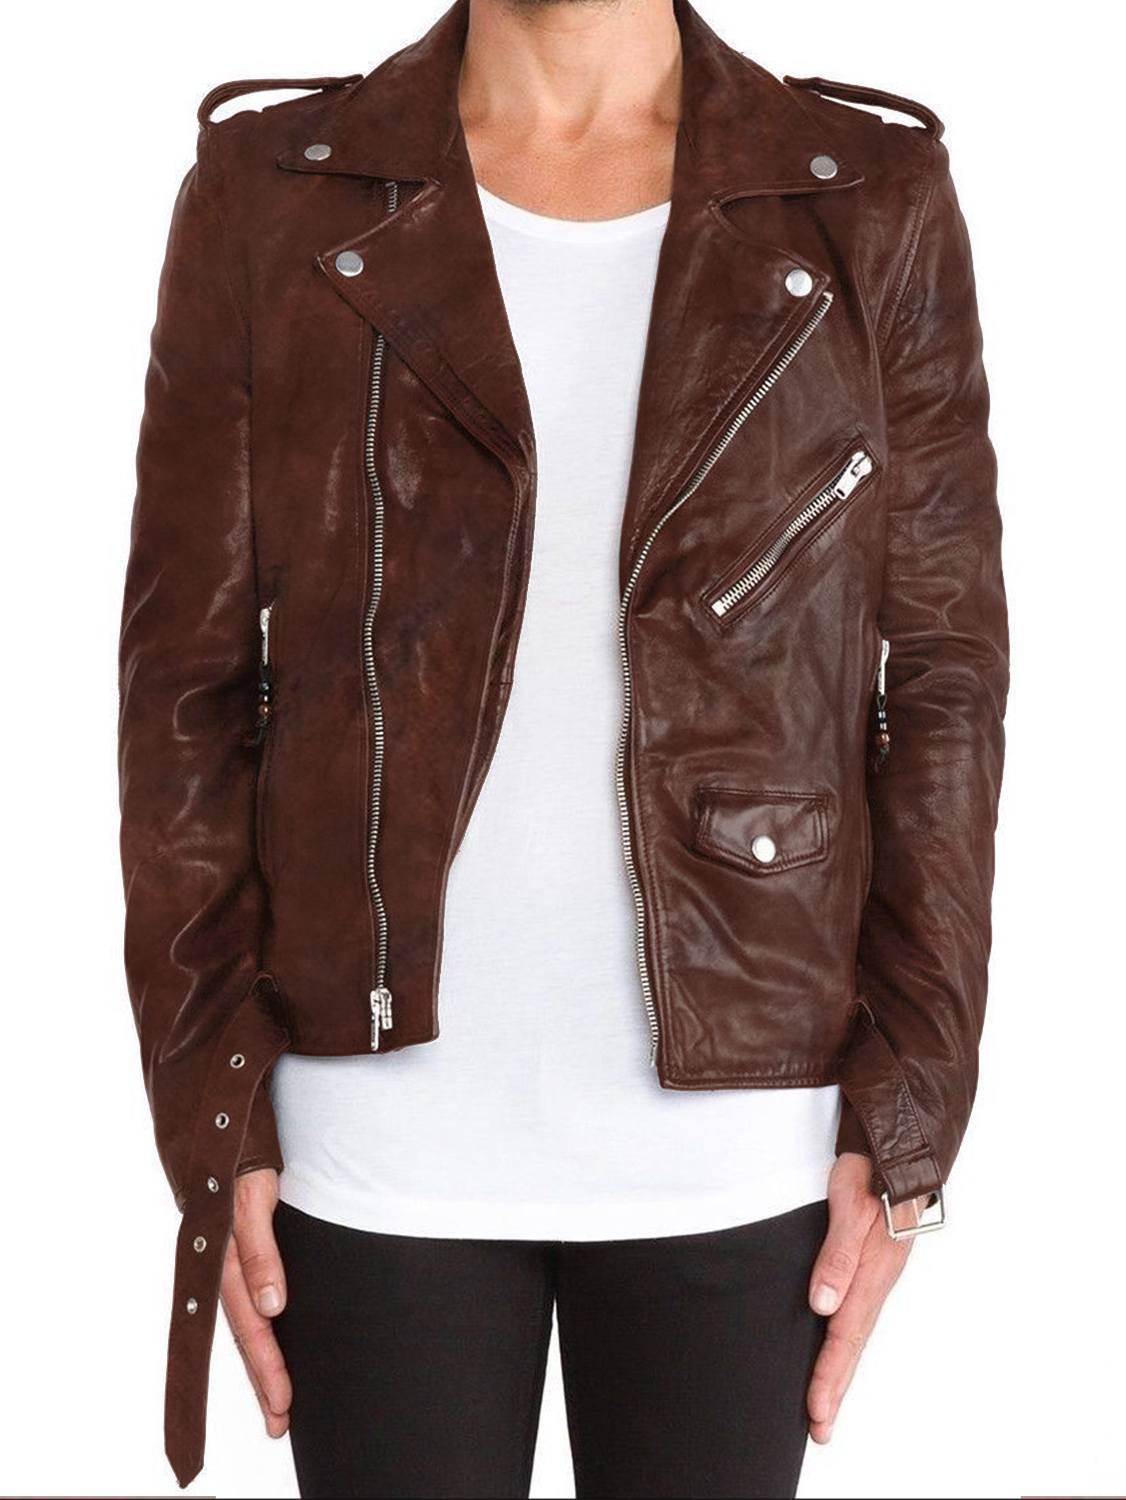 Leather Jackets Hub Mens Genuine Lambskin Leather Jacket (Black, Double Rider Jacket) - 1501115